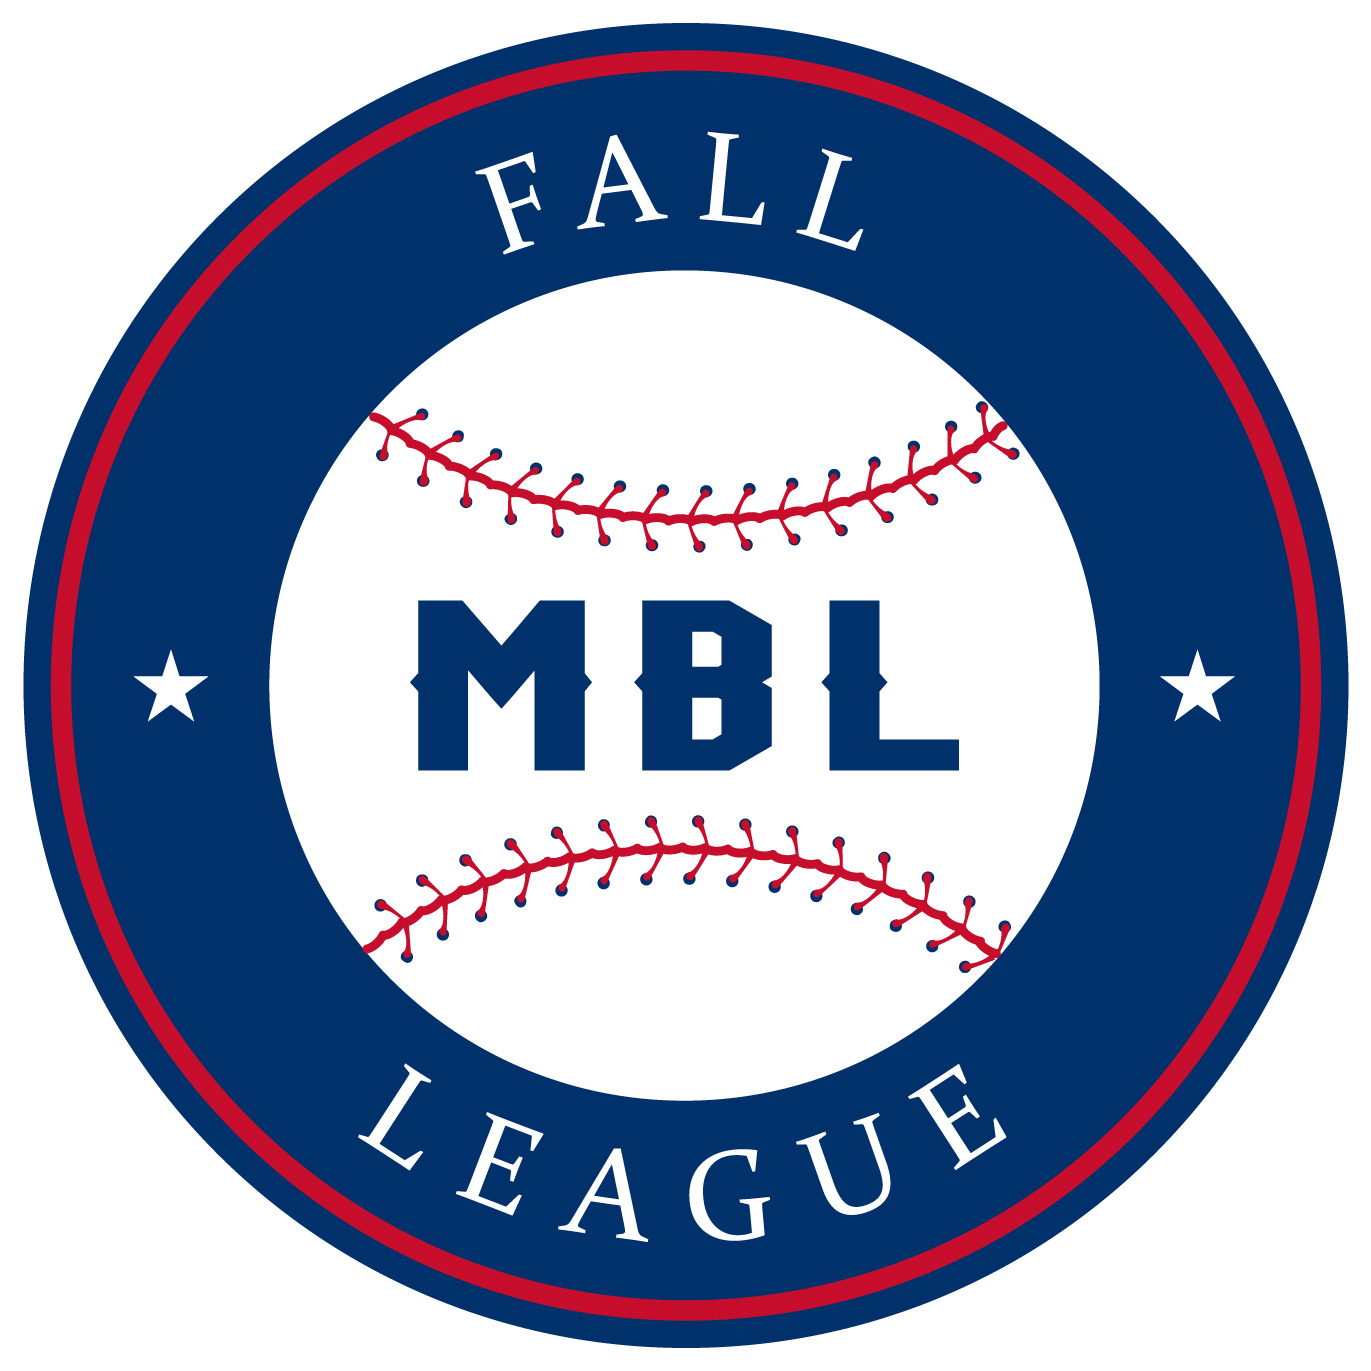 Fall League